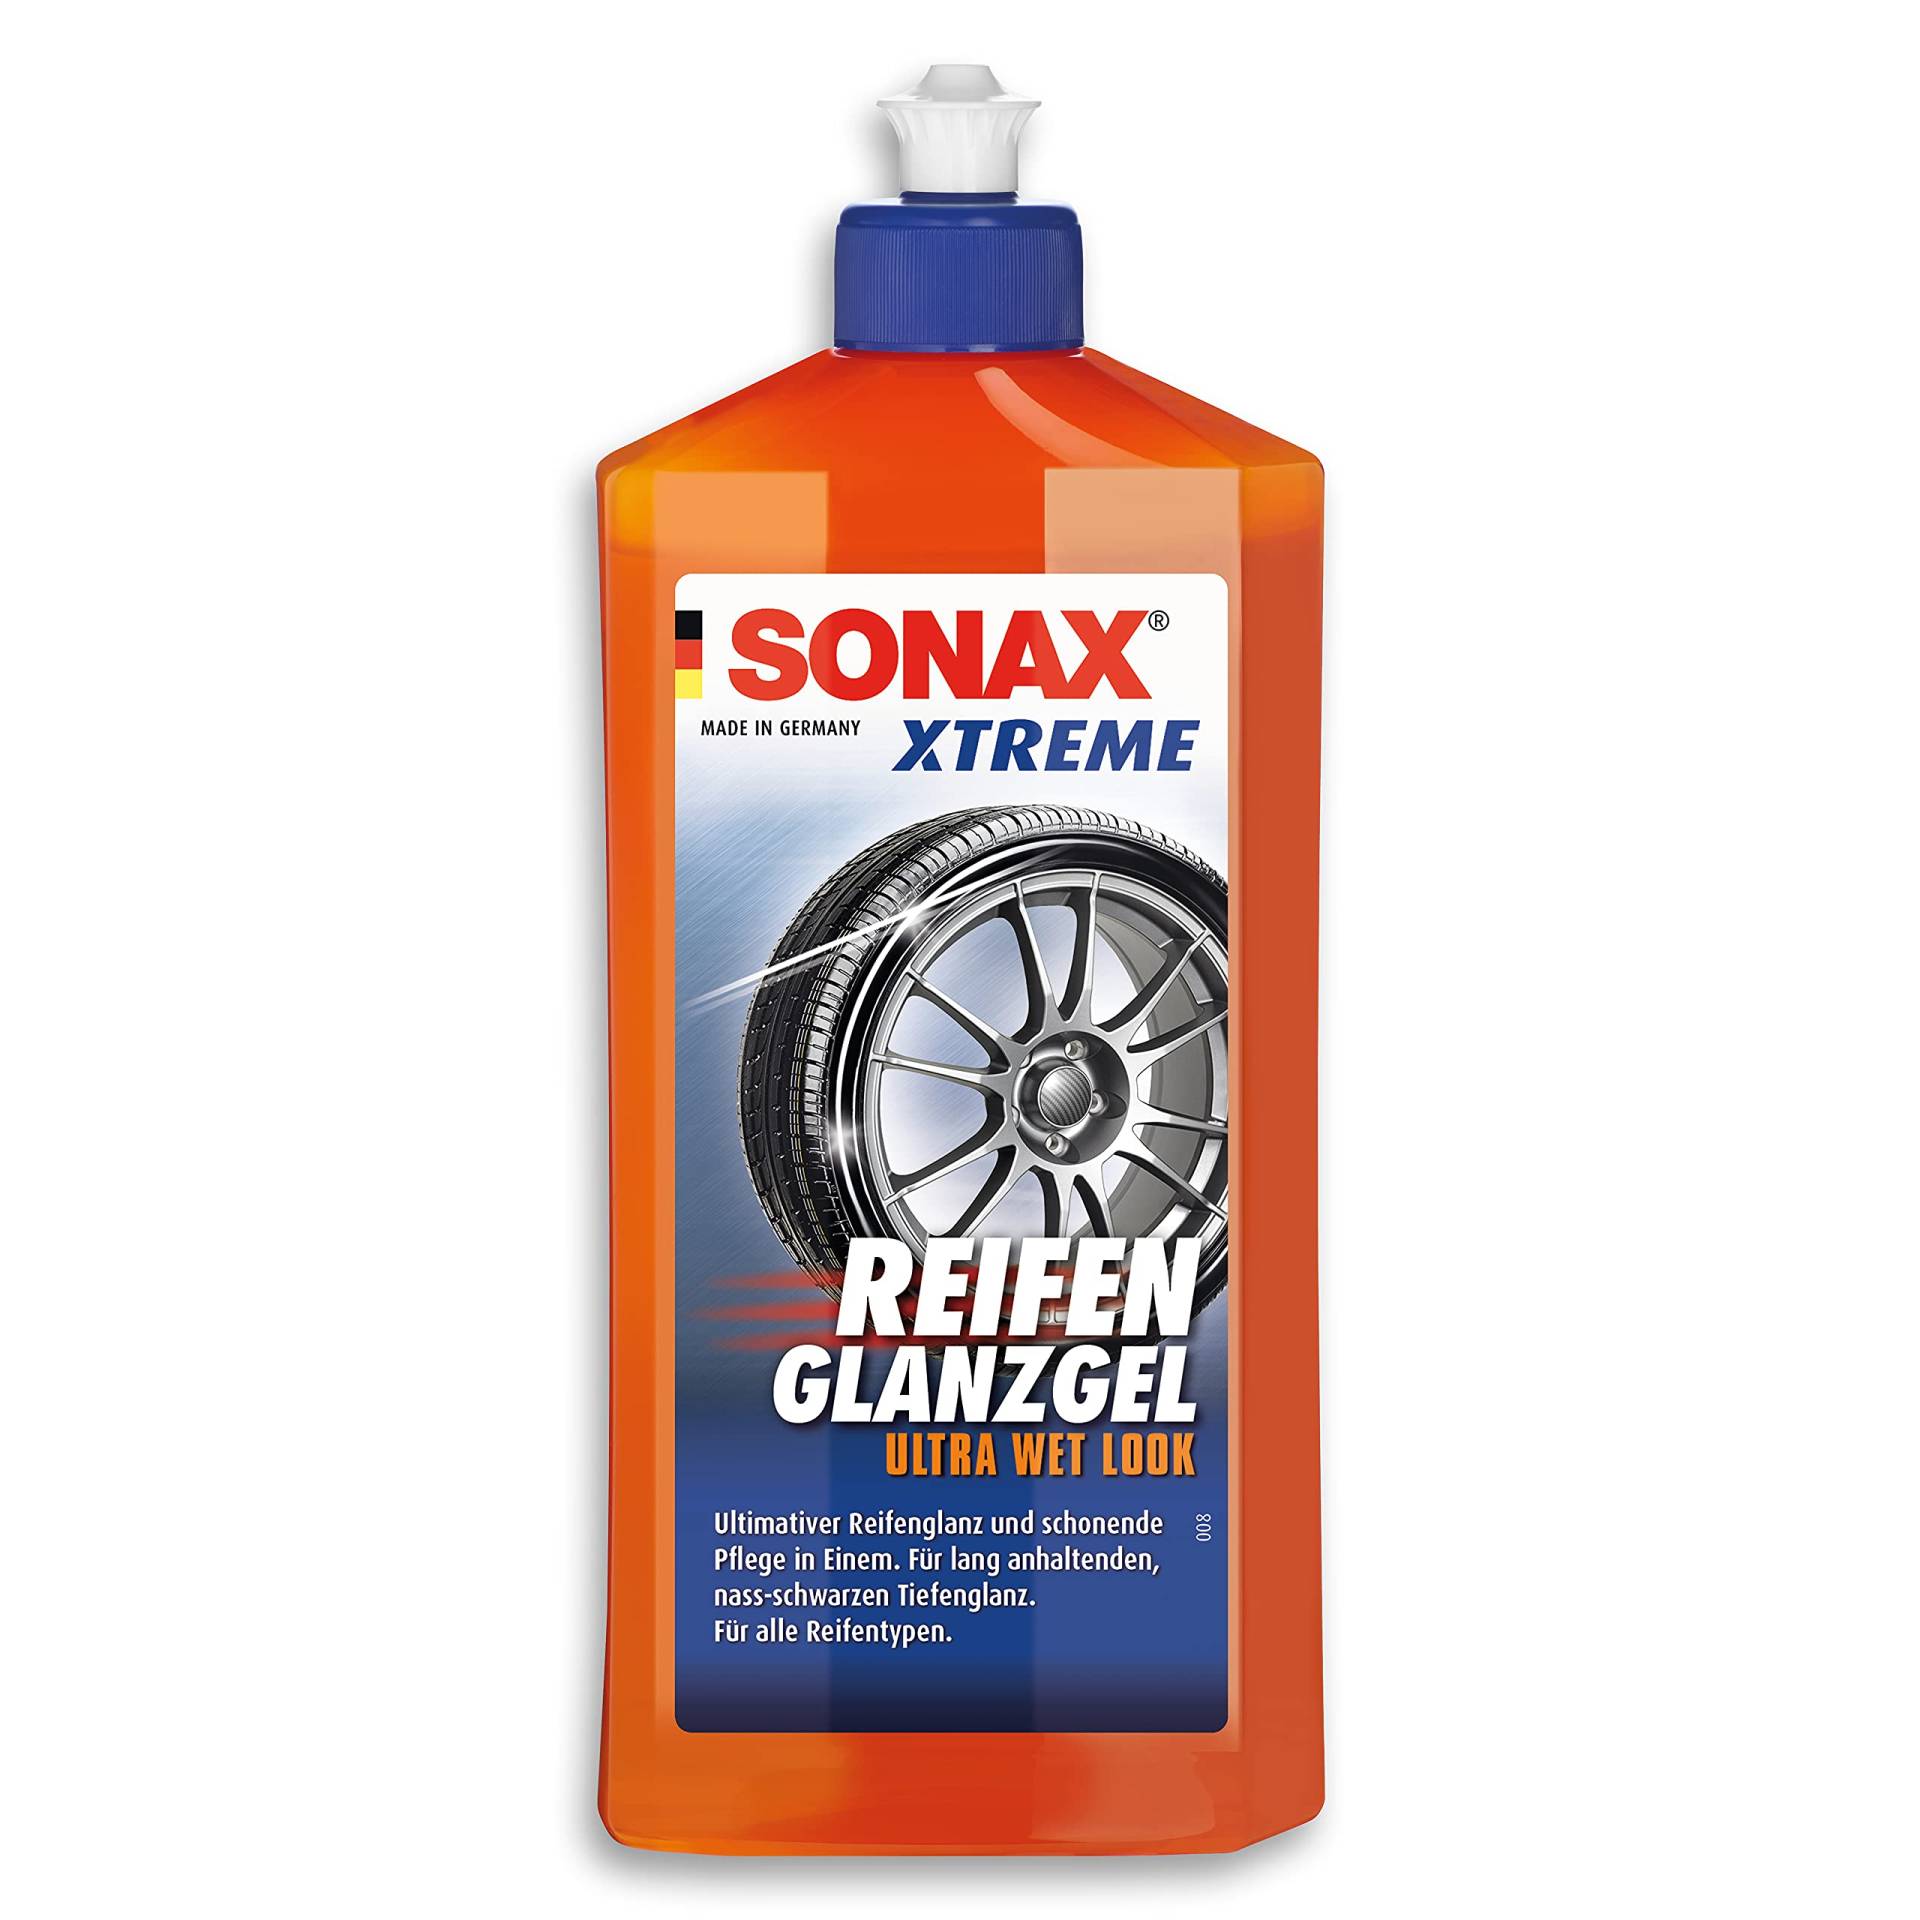 SONAX XTREME ReifenGlanzGel (500 ml) pflegt & schützt Gummi & Reifen vor Rissbildung & Farbausbleichung, lang anhaltender Reifenglanz | Art-Nr. 02352410 von SONAX